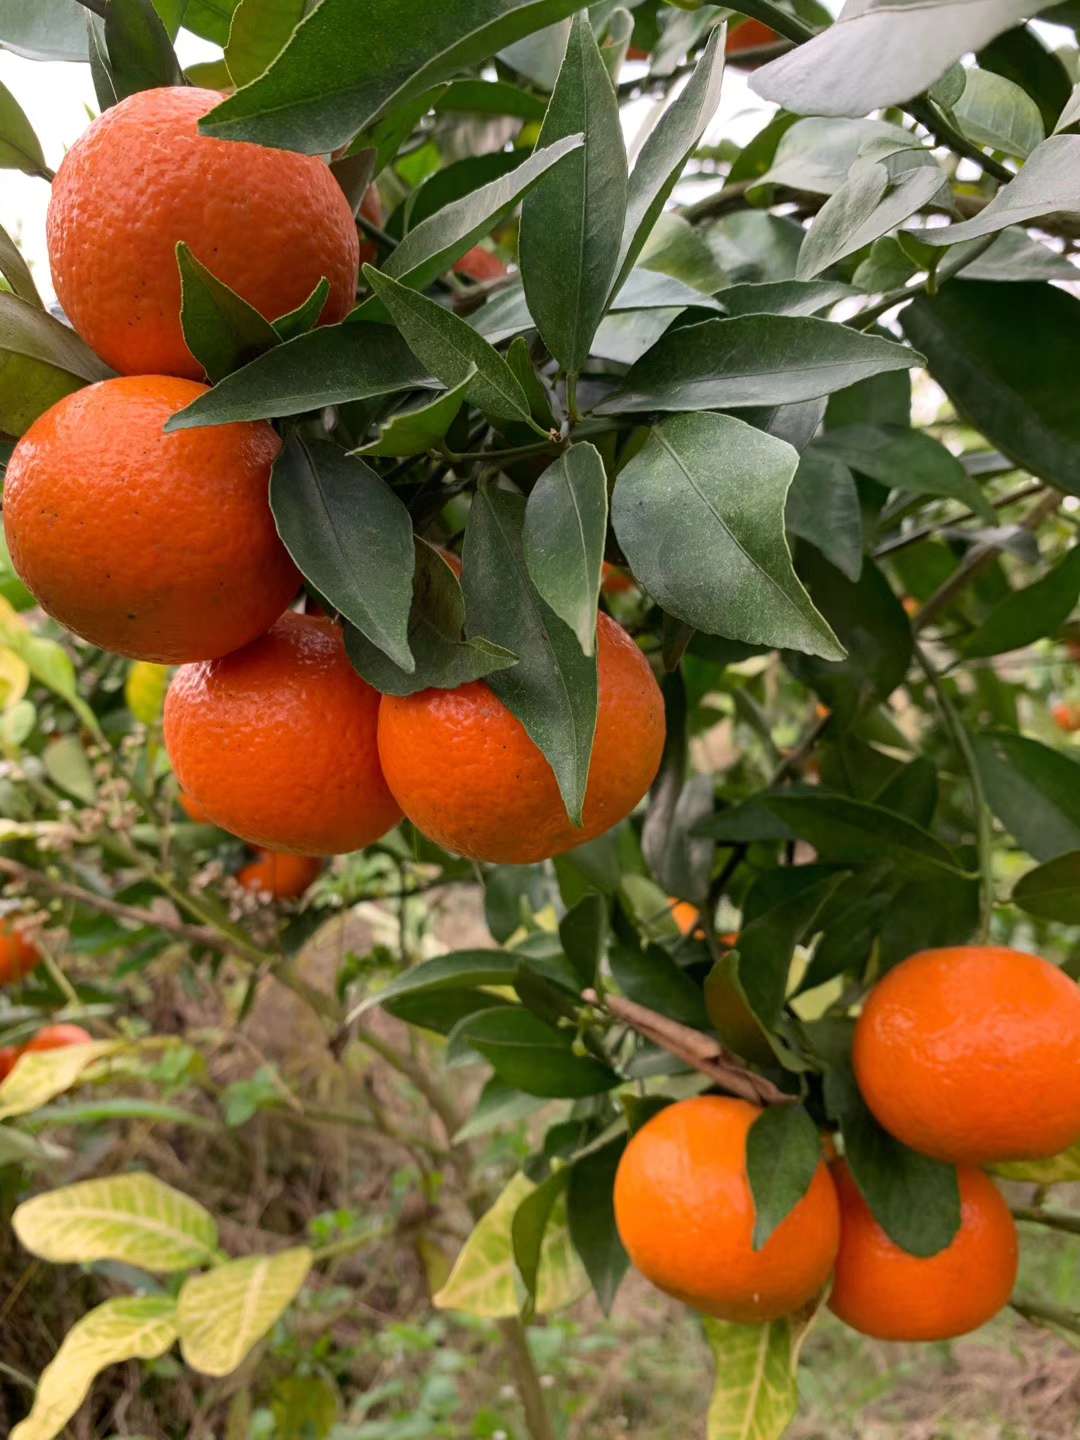 良种柑橘美国糖橘种类介绍2453 作者:imogor 